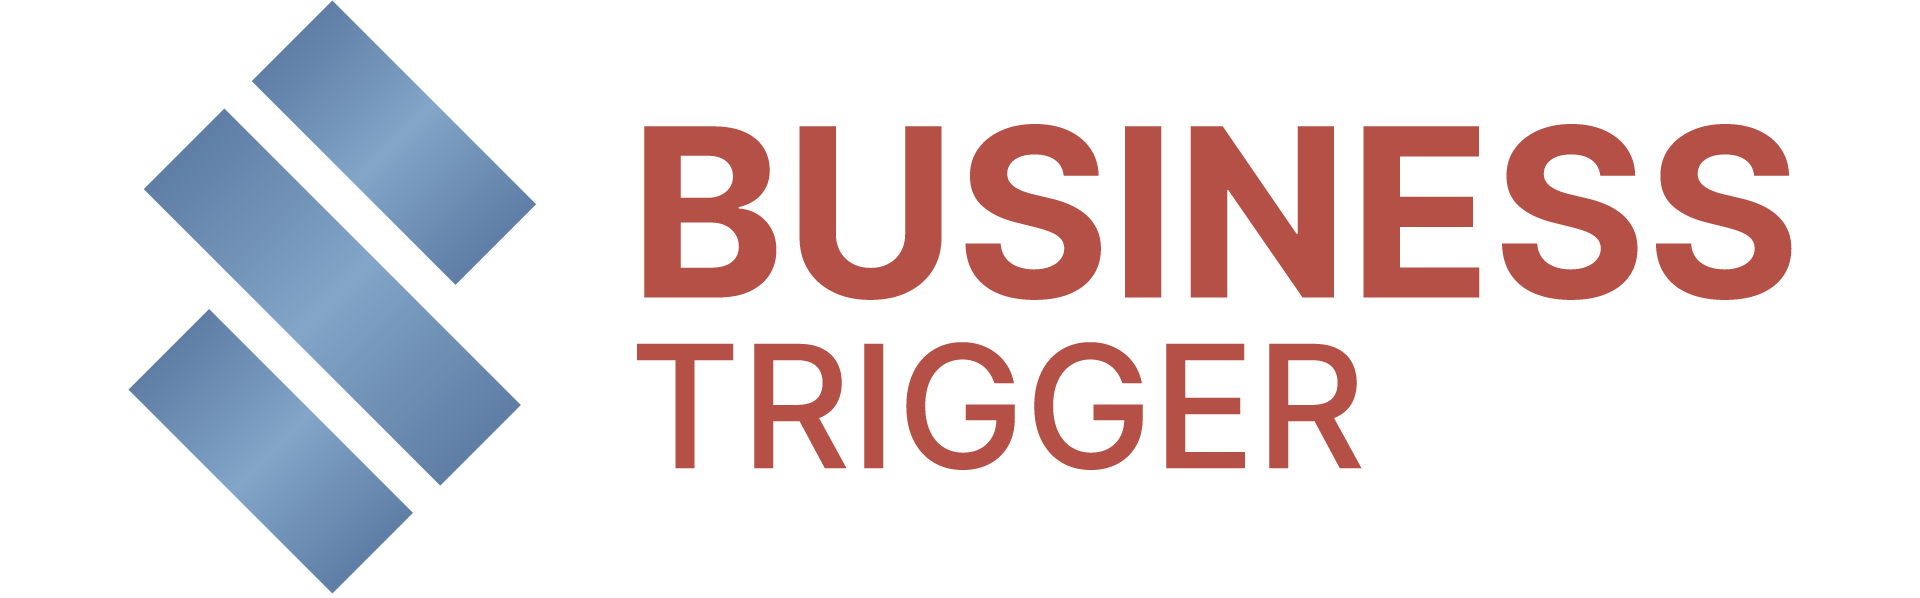 biztrigger.com